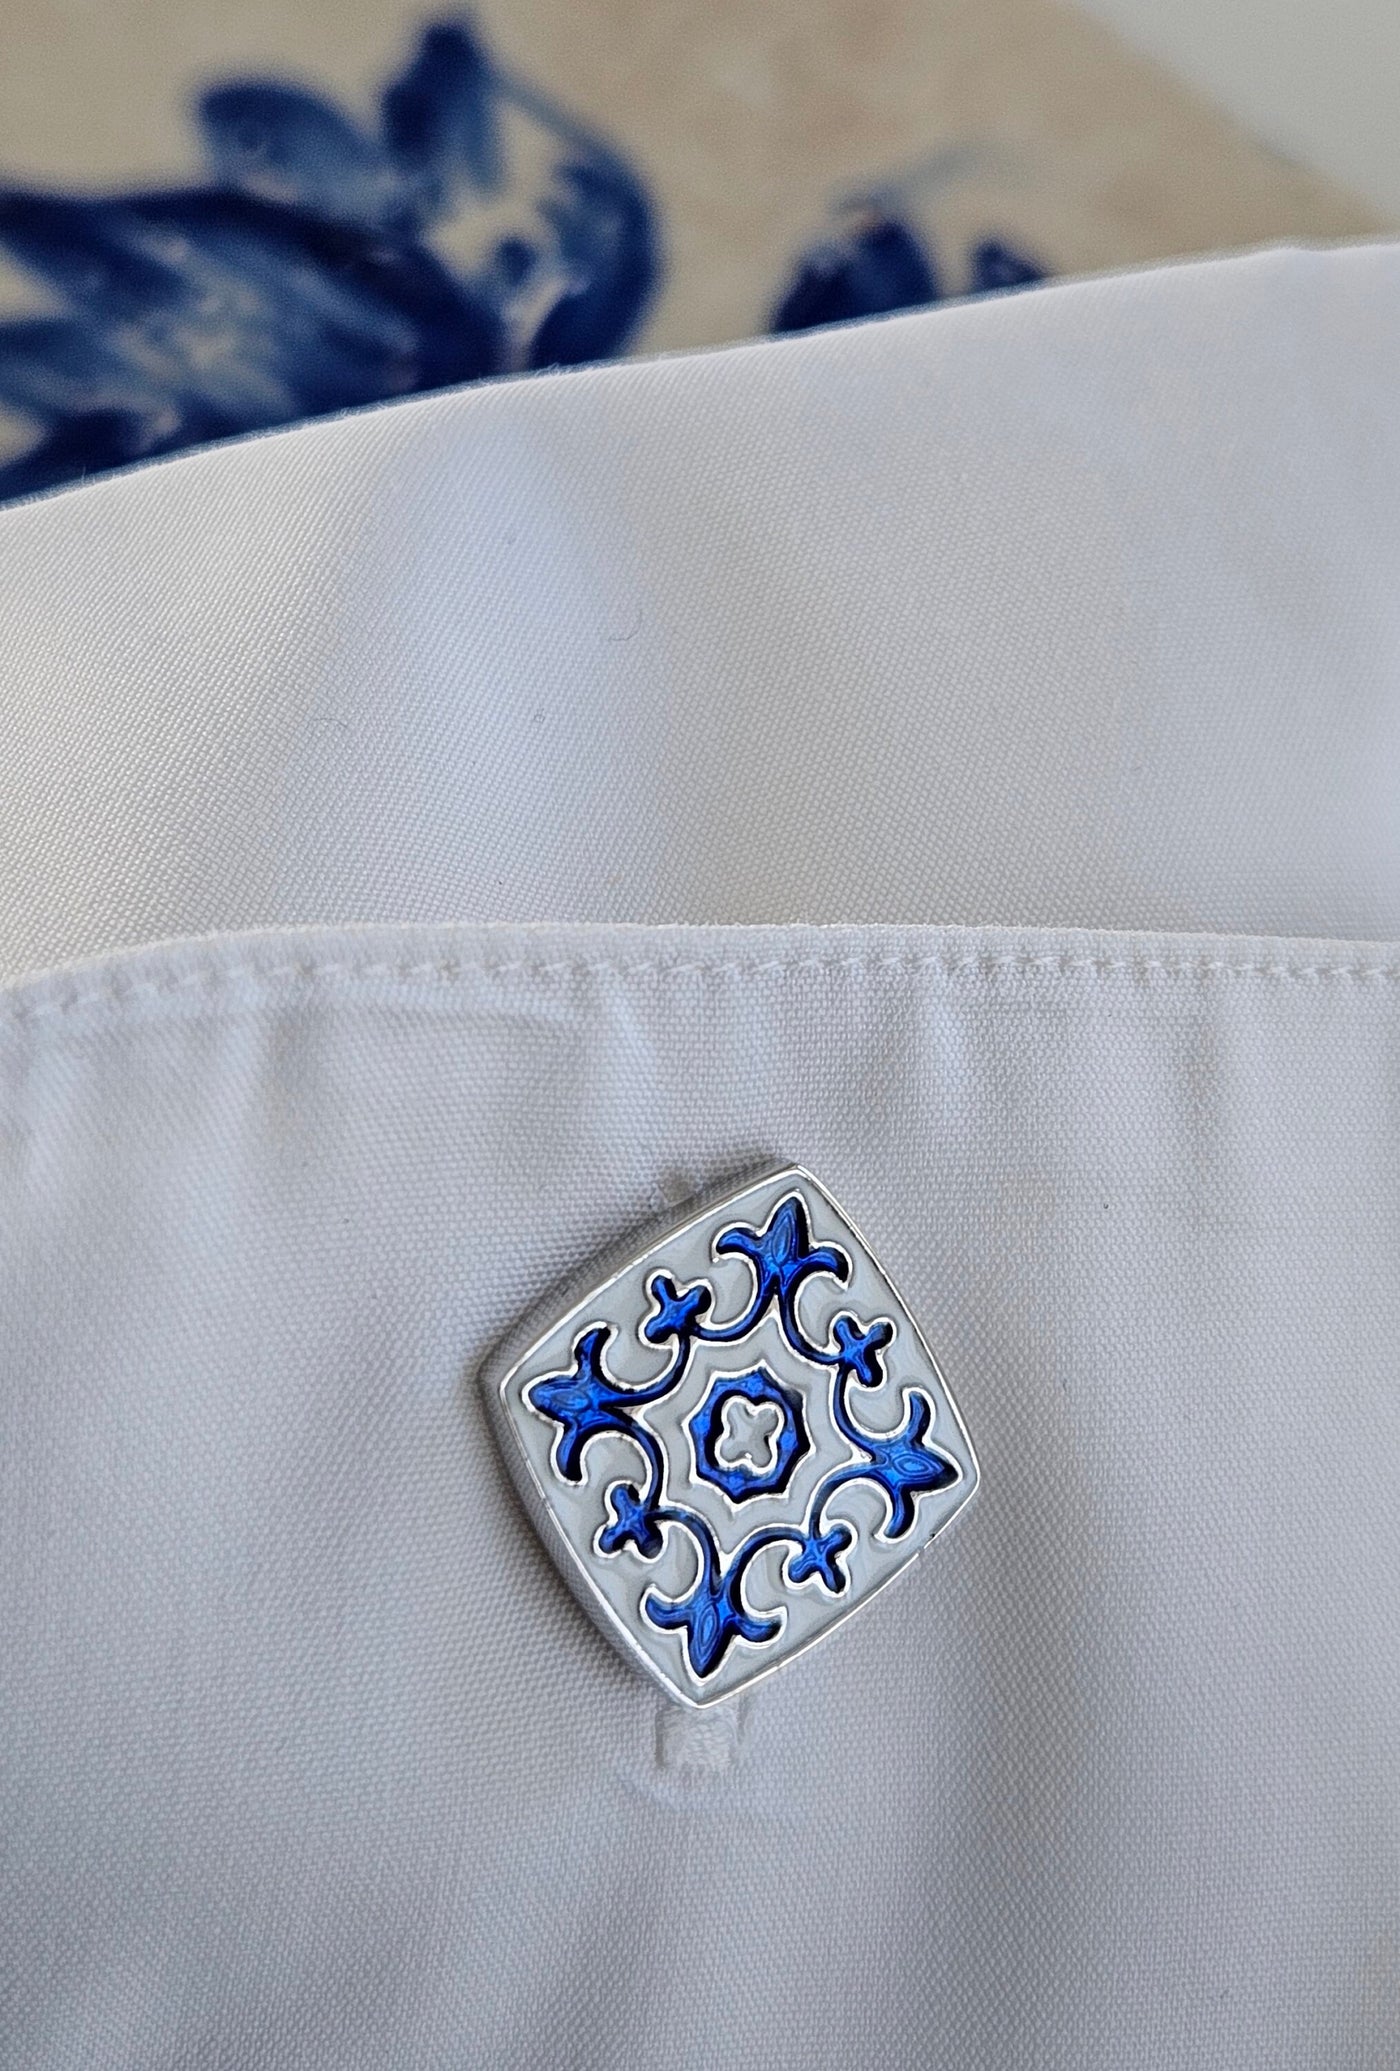 Portugal Tile Blue Enamel Cufflinks Azulejo Majolica Blue White Steel Luxury Cufflink Set Portuguese Groom Wedding Corporate Suit Cufflinks